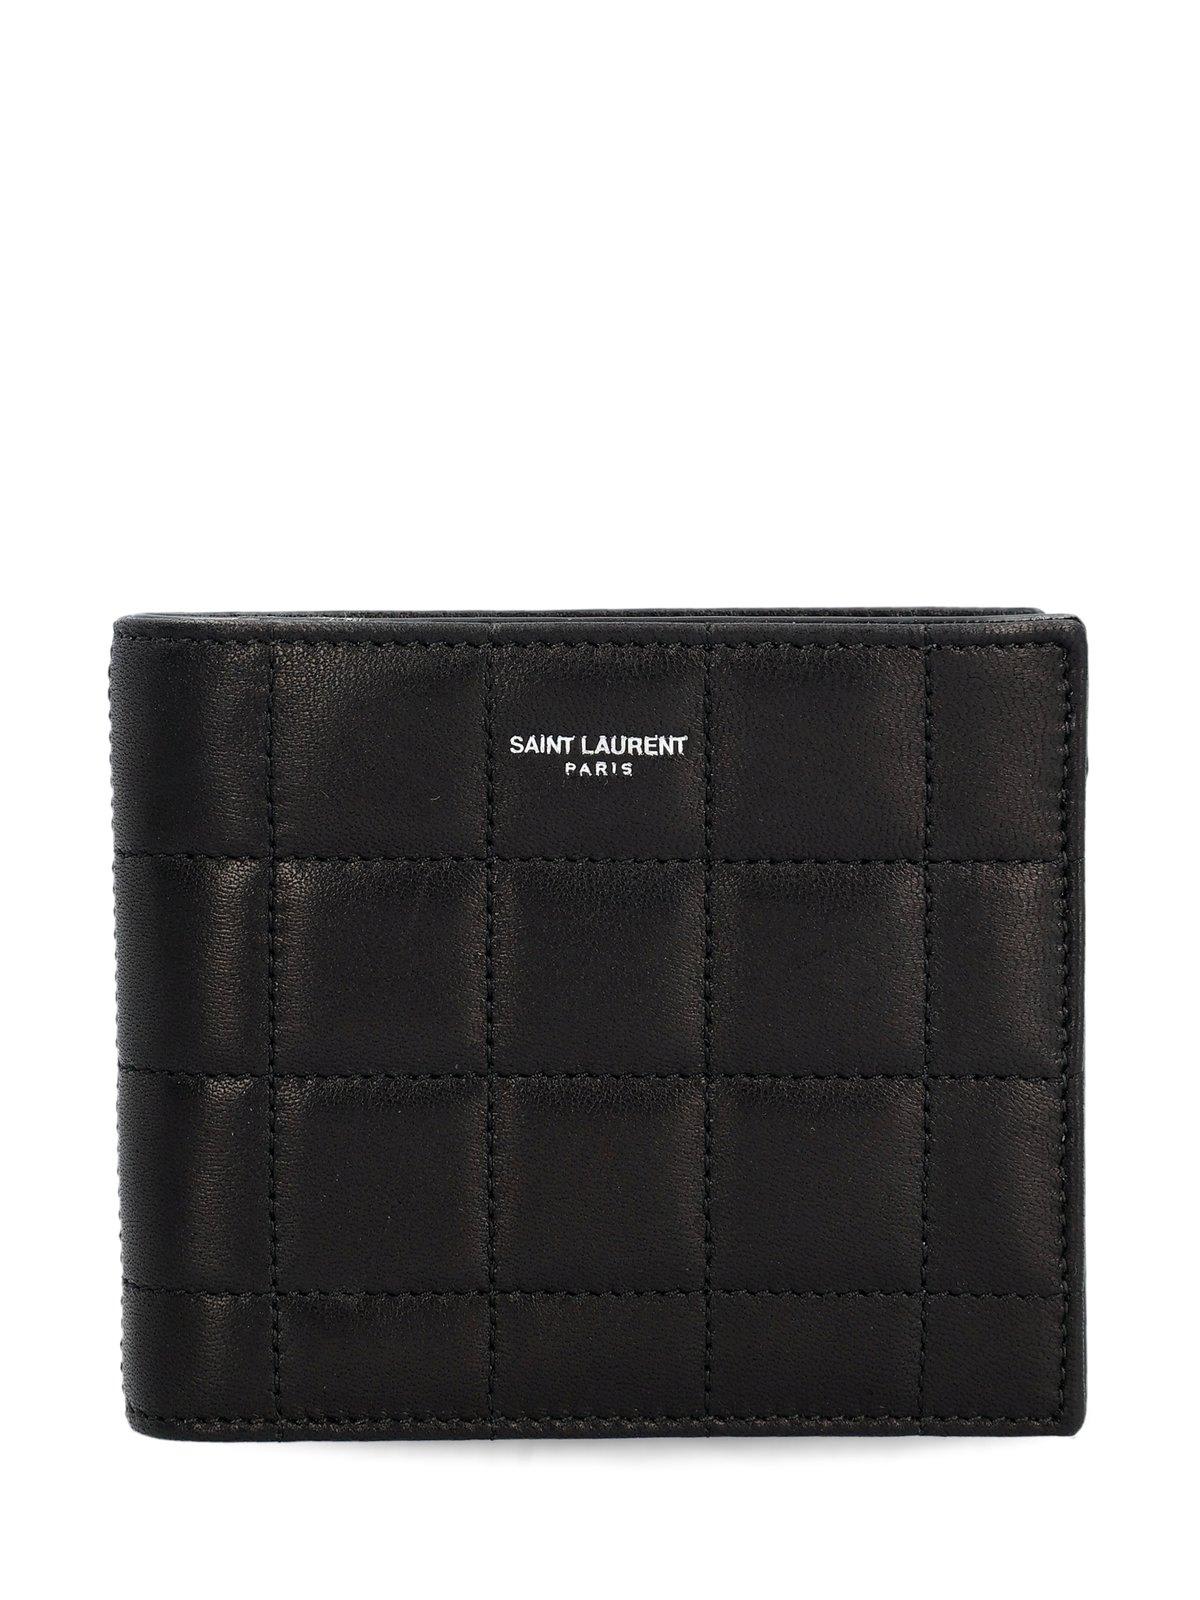 Shop Saint Laurent Paris East West Bi-fold Wallet In Black